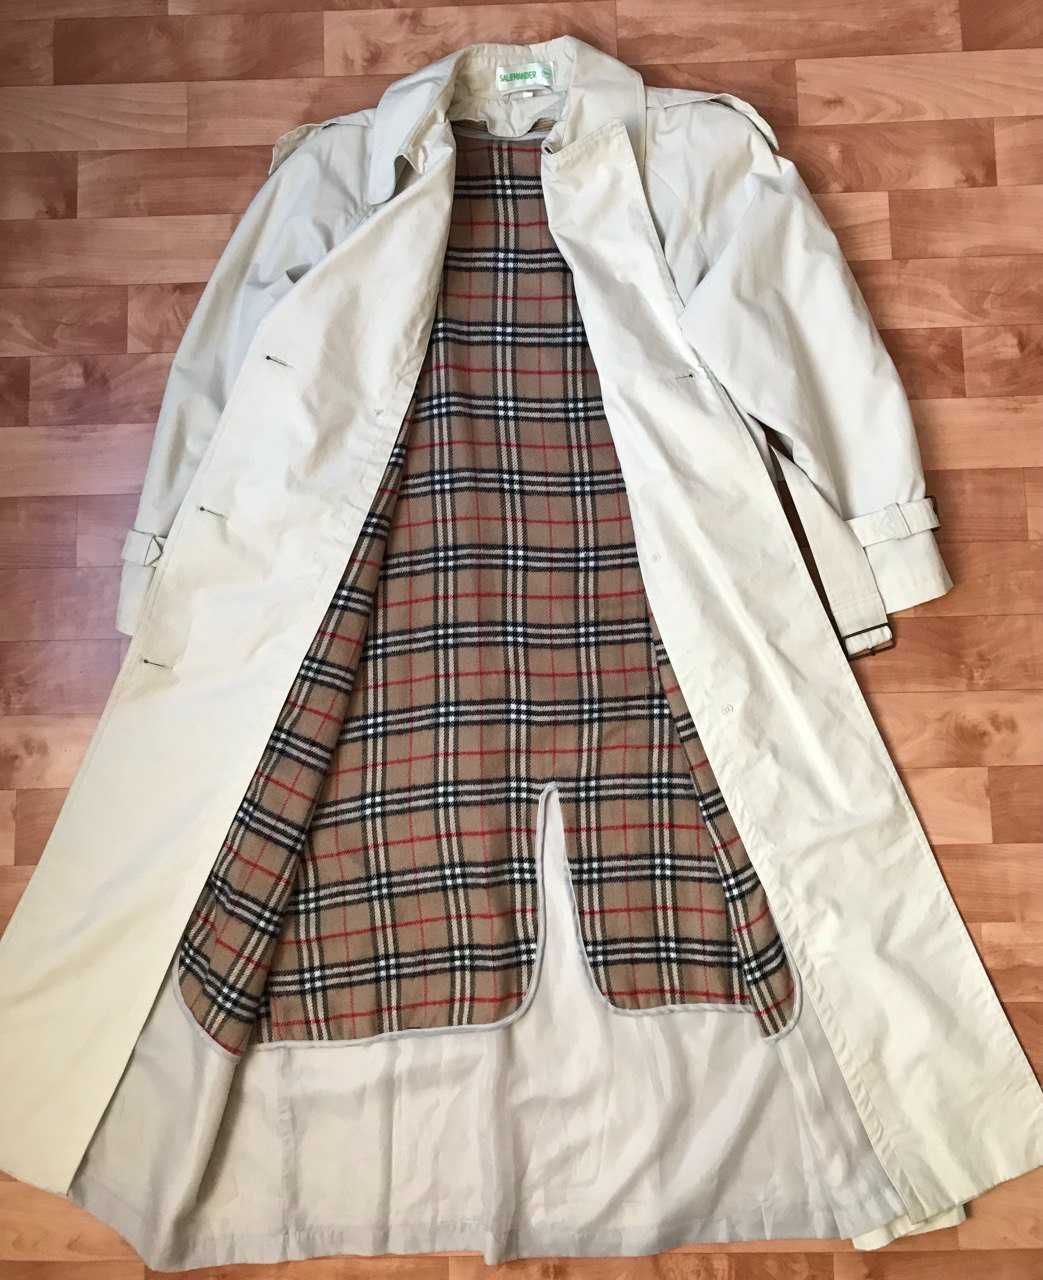 Продам плащи/тренчи и кашемировое женское пальто(Италия)